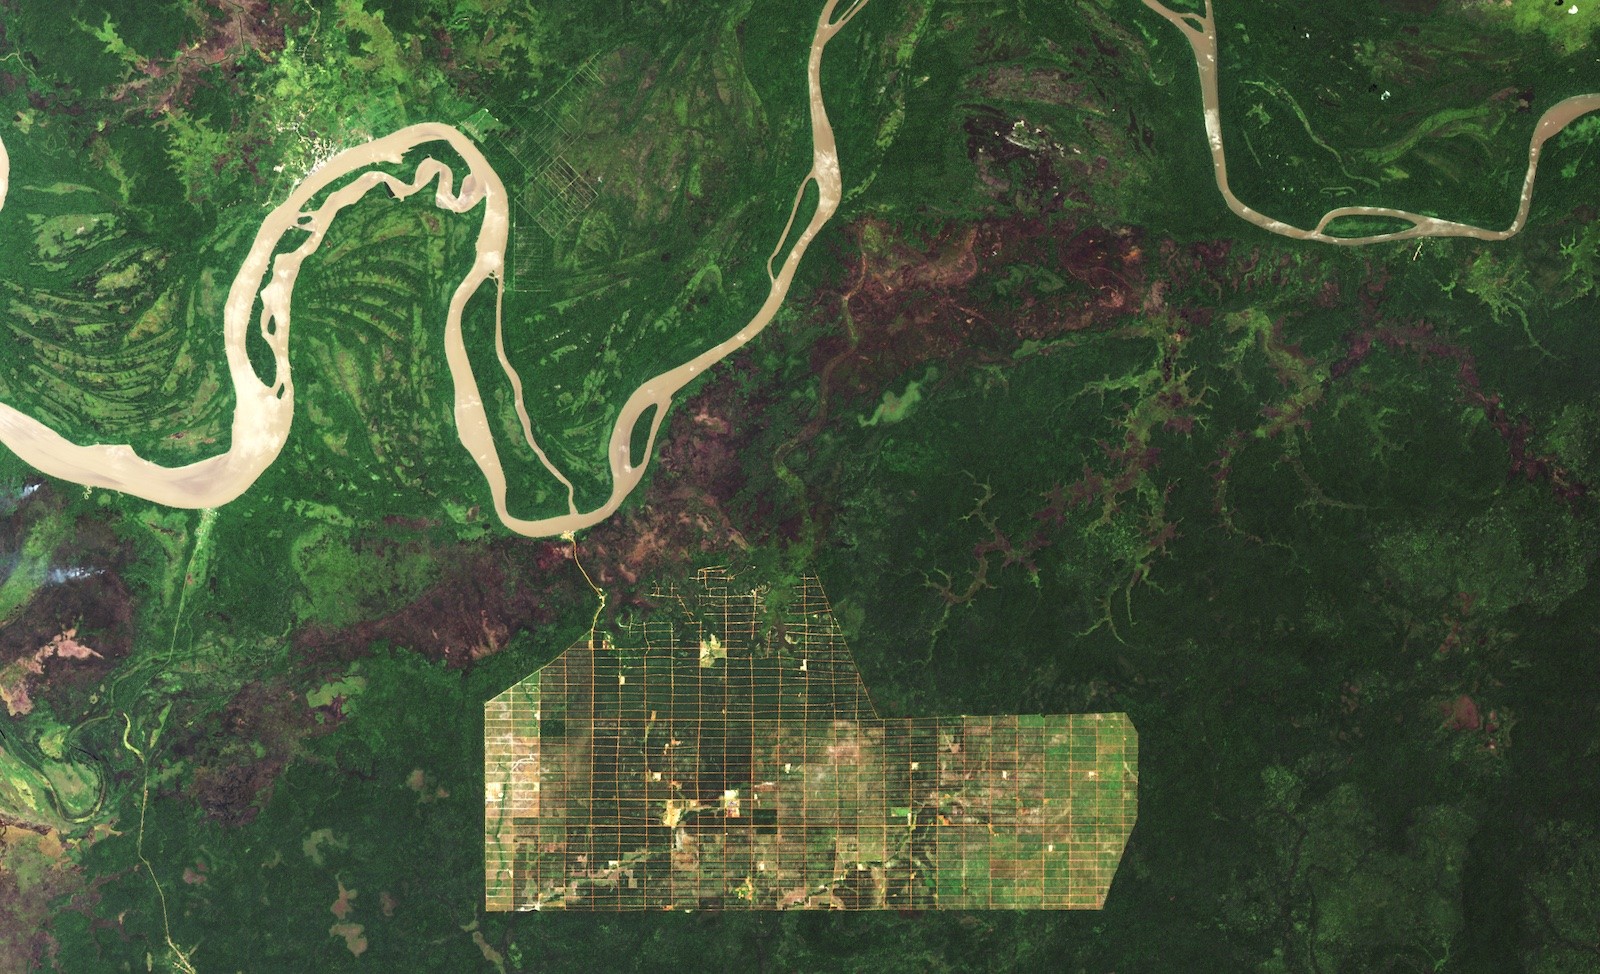 Rejon rzeki Digul w Papui (Indonezja) według stanu z końca 2019 roku - zobrazowanie z systemu satelitarnego Landsat. Fot. NASA [landsat.visibleearth.nasa.gov]